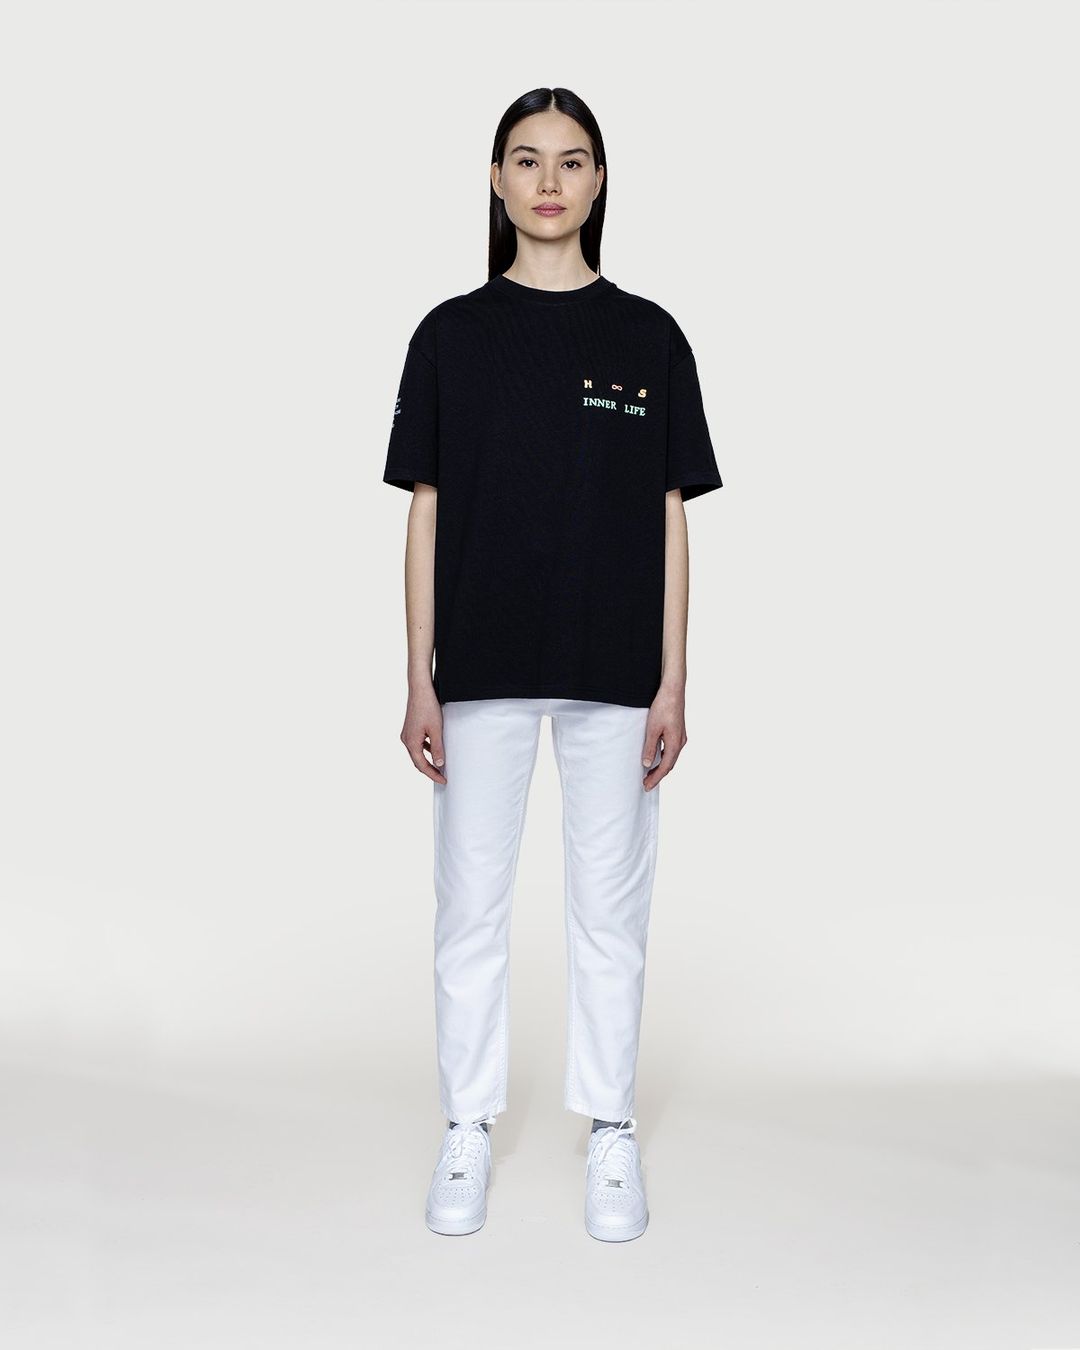 Highsnobiety – Inner Life T-Shirt Black | Highsnobiety Shop